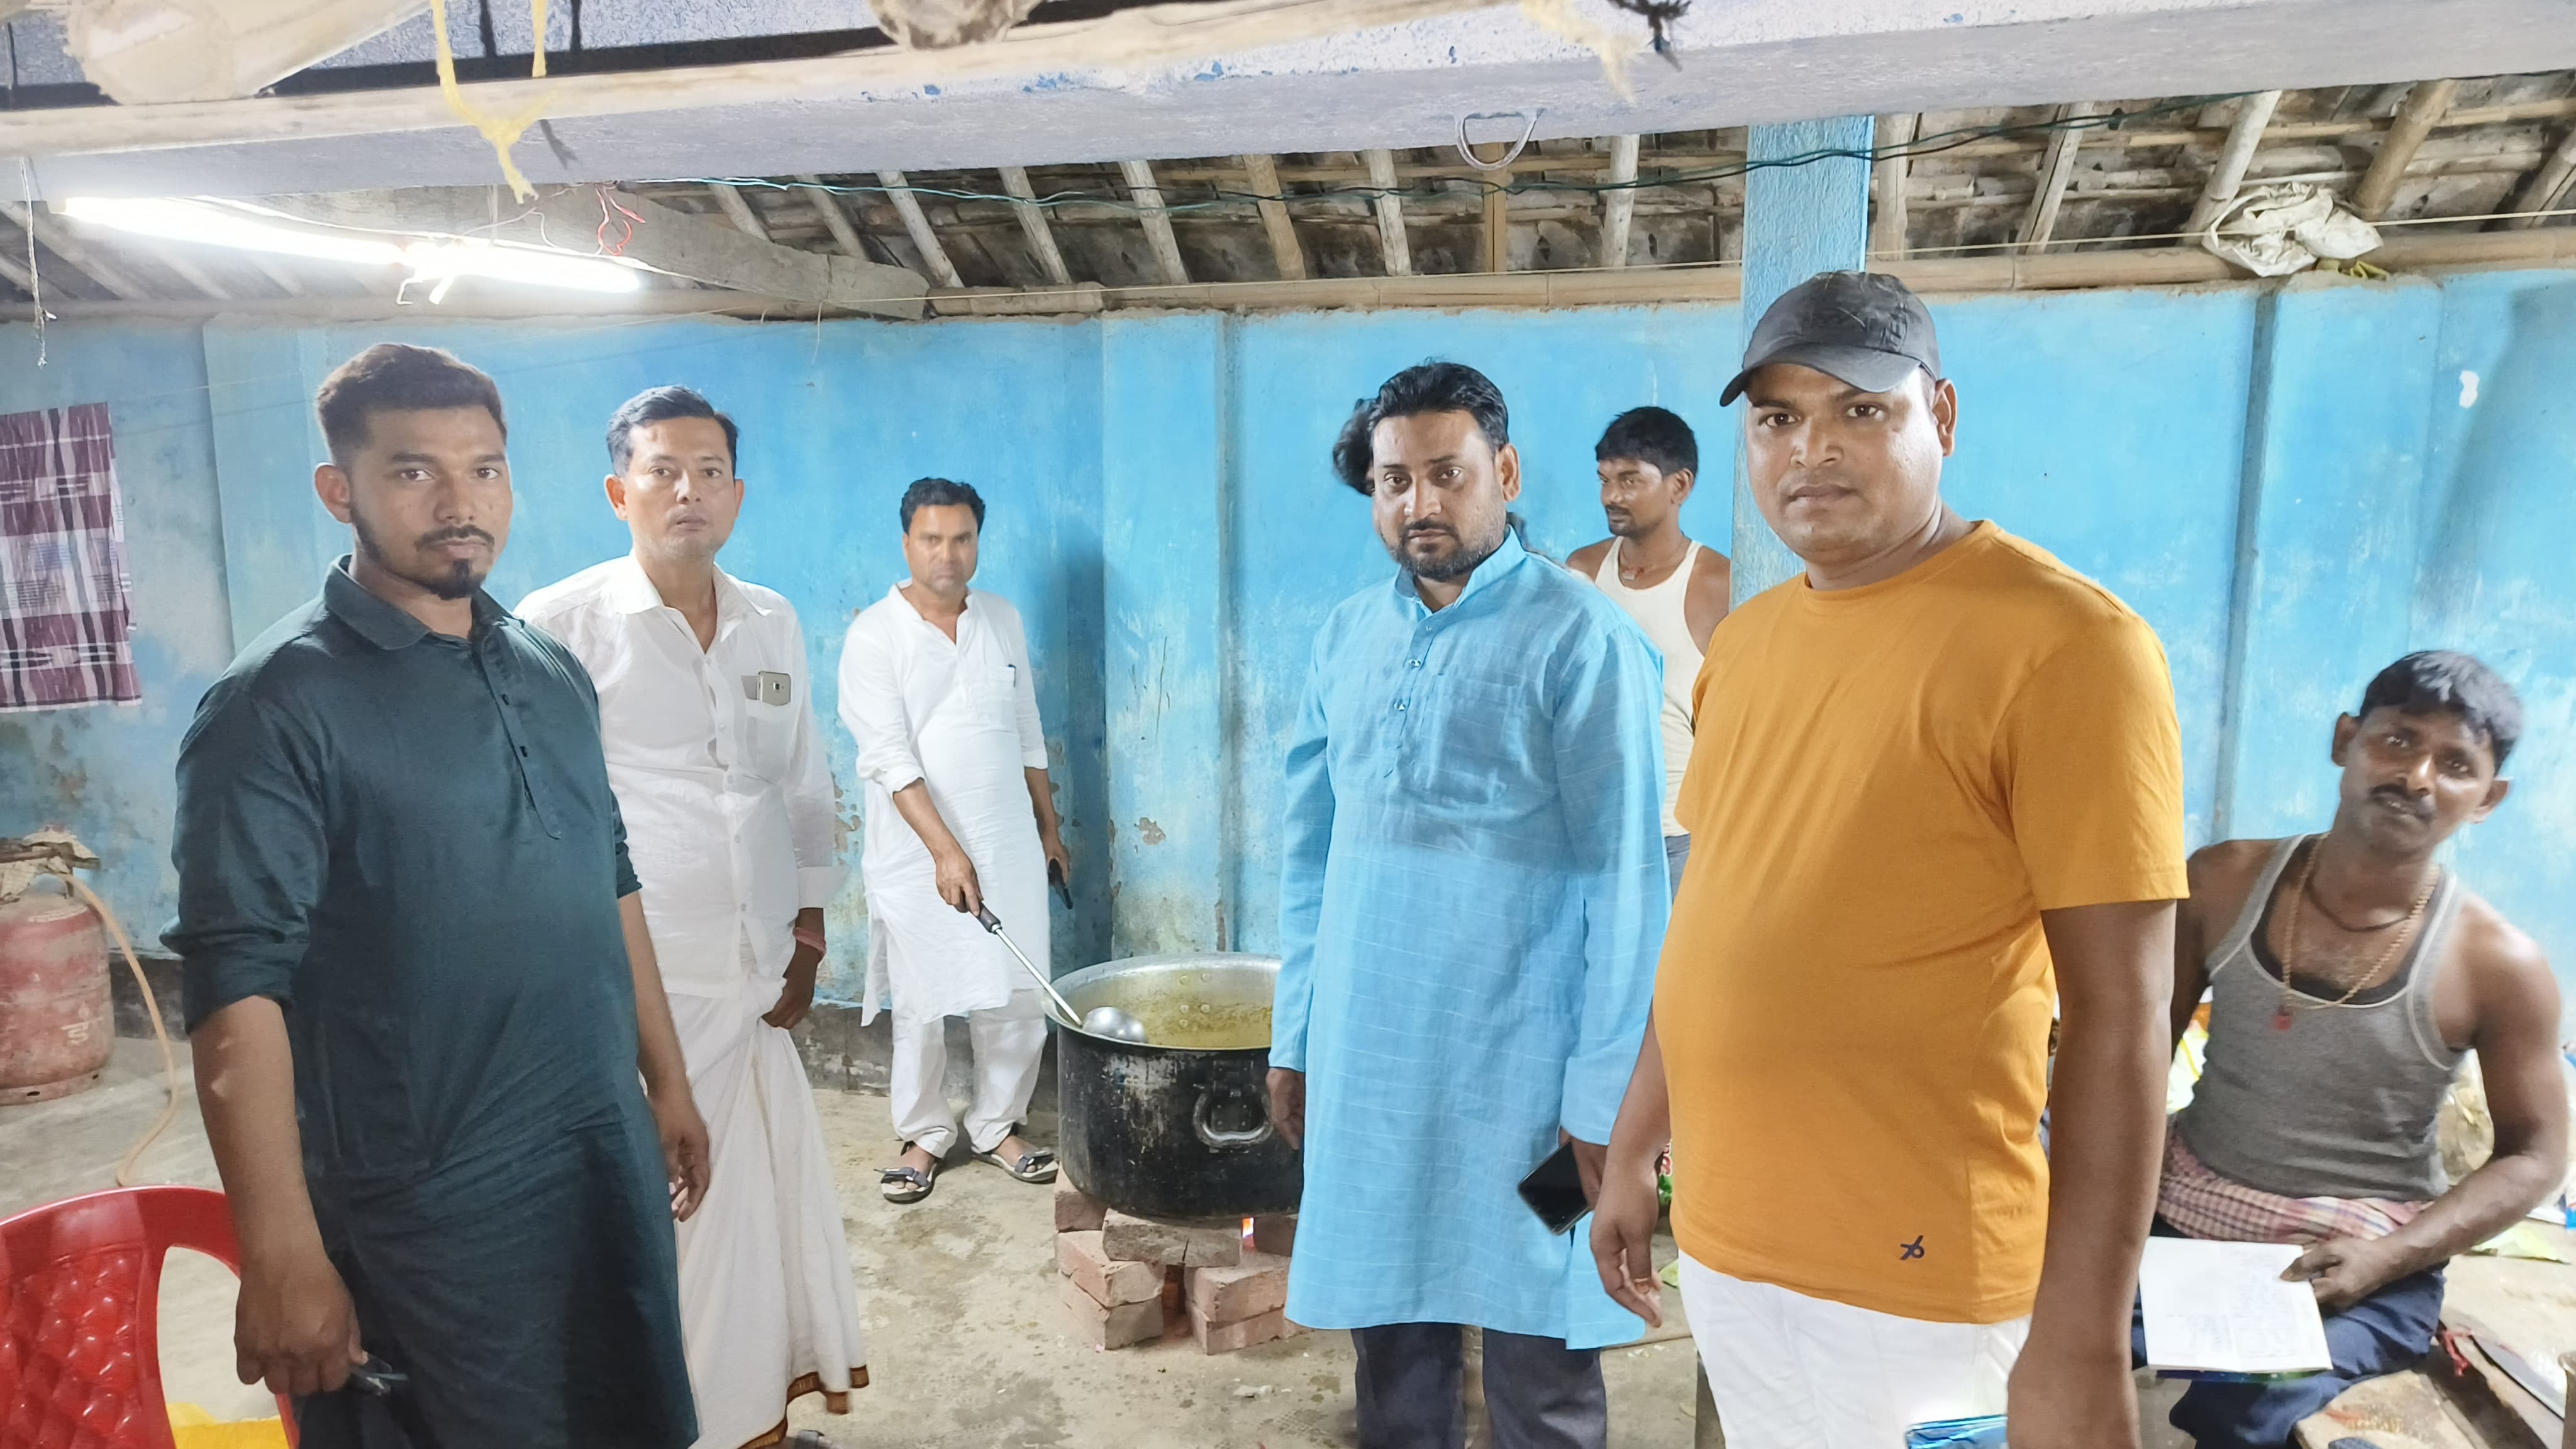 मनिहारी प्रशासन के ओर से चलाया जा रहा सामुदायिक किचन,मेधनीपुर नौजवान कमिटी के द्वारा किया गया बर्तन वितरण।